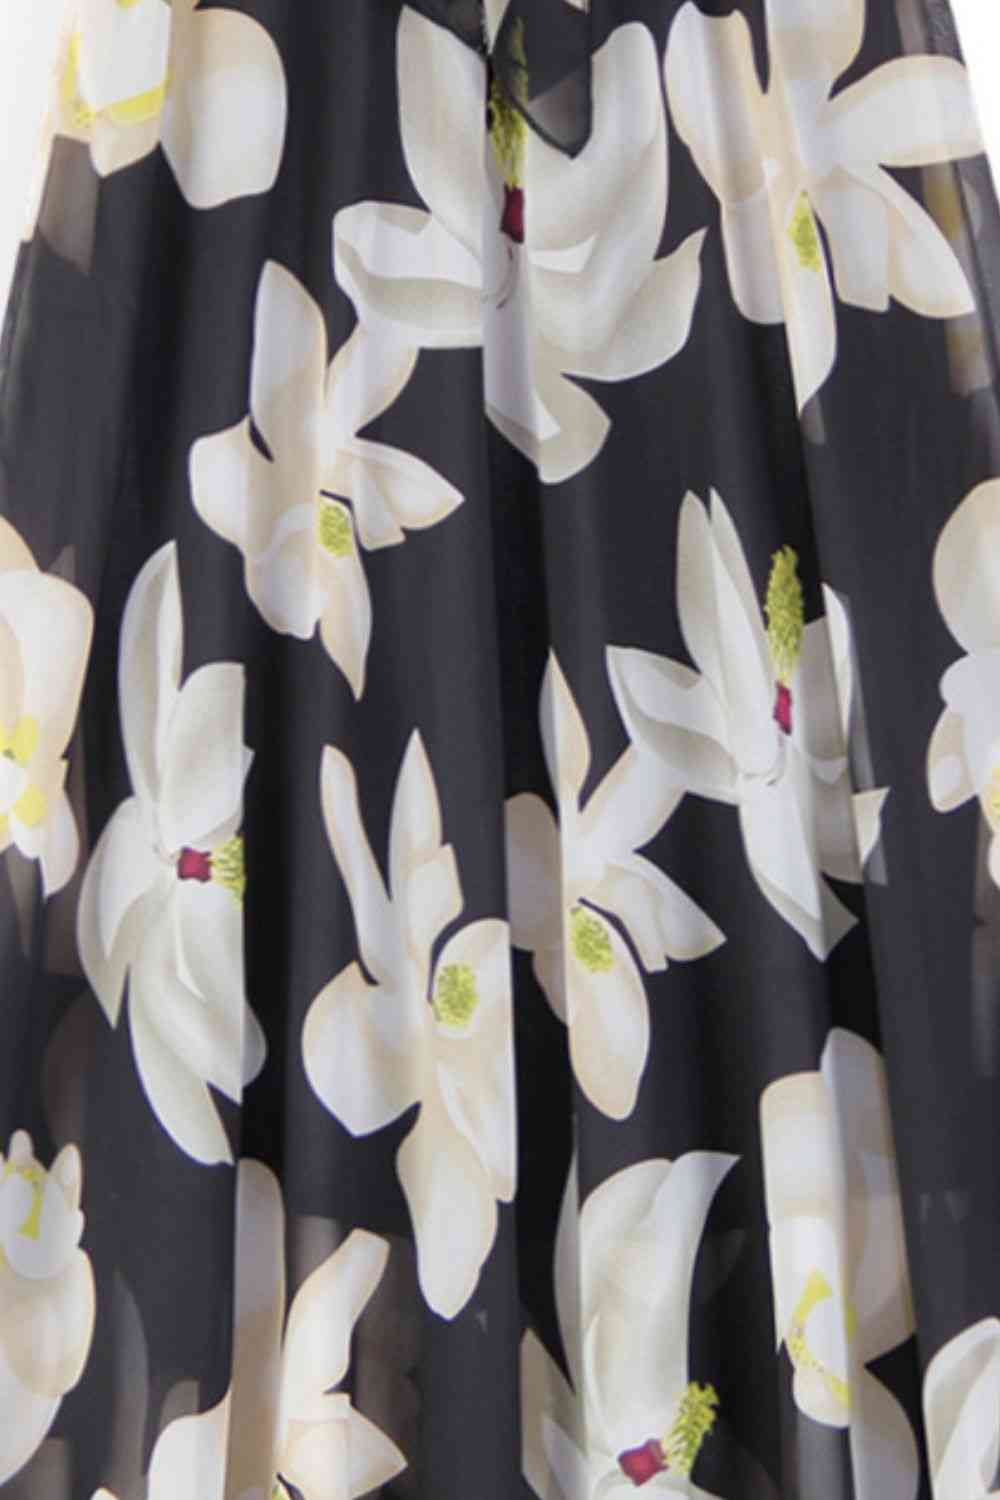 Falda con cintura anudada y estampado floral de tamaño completo